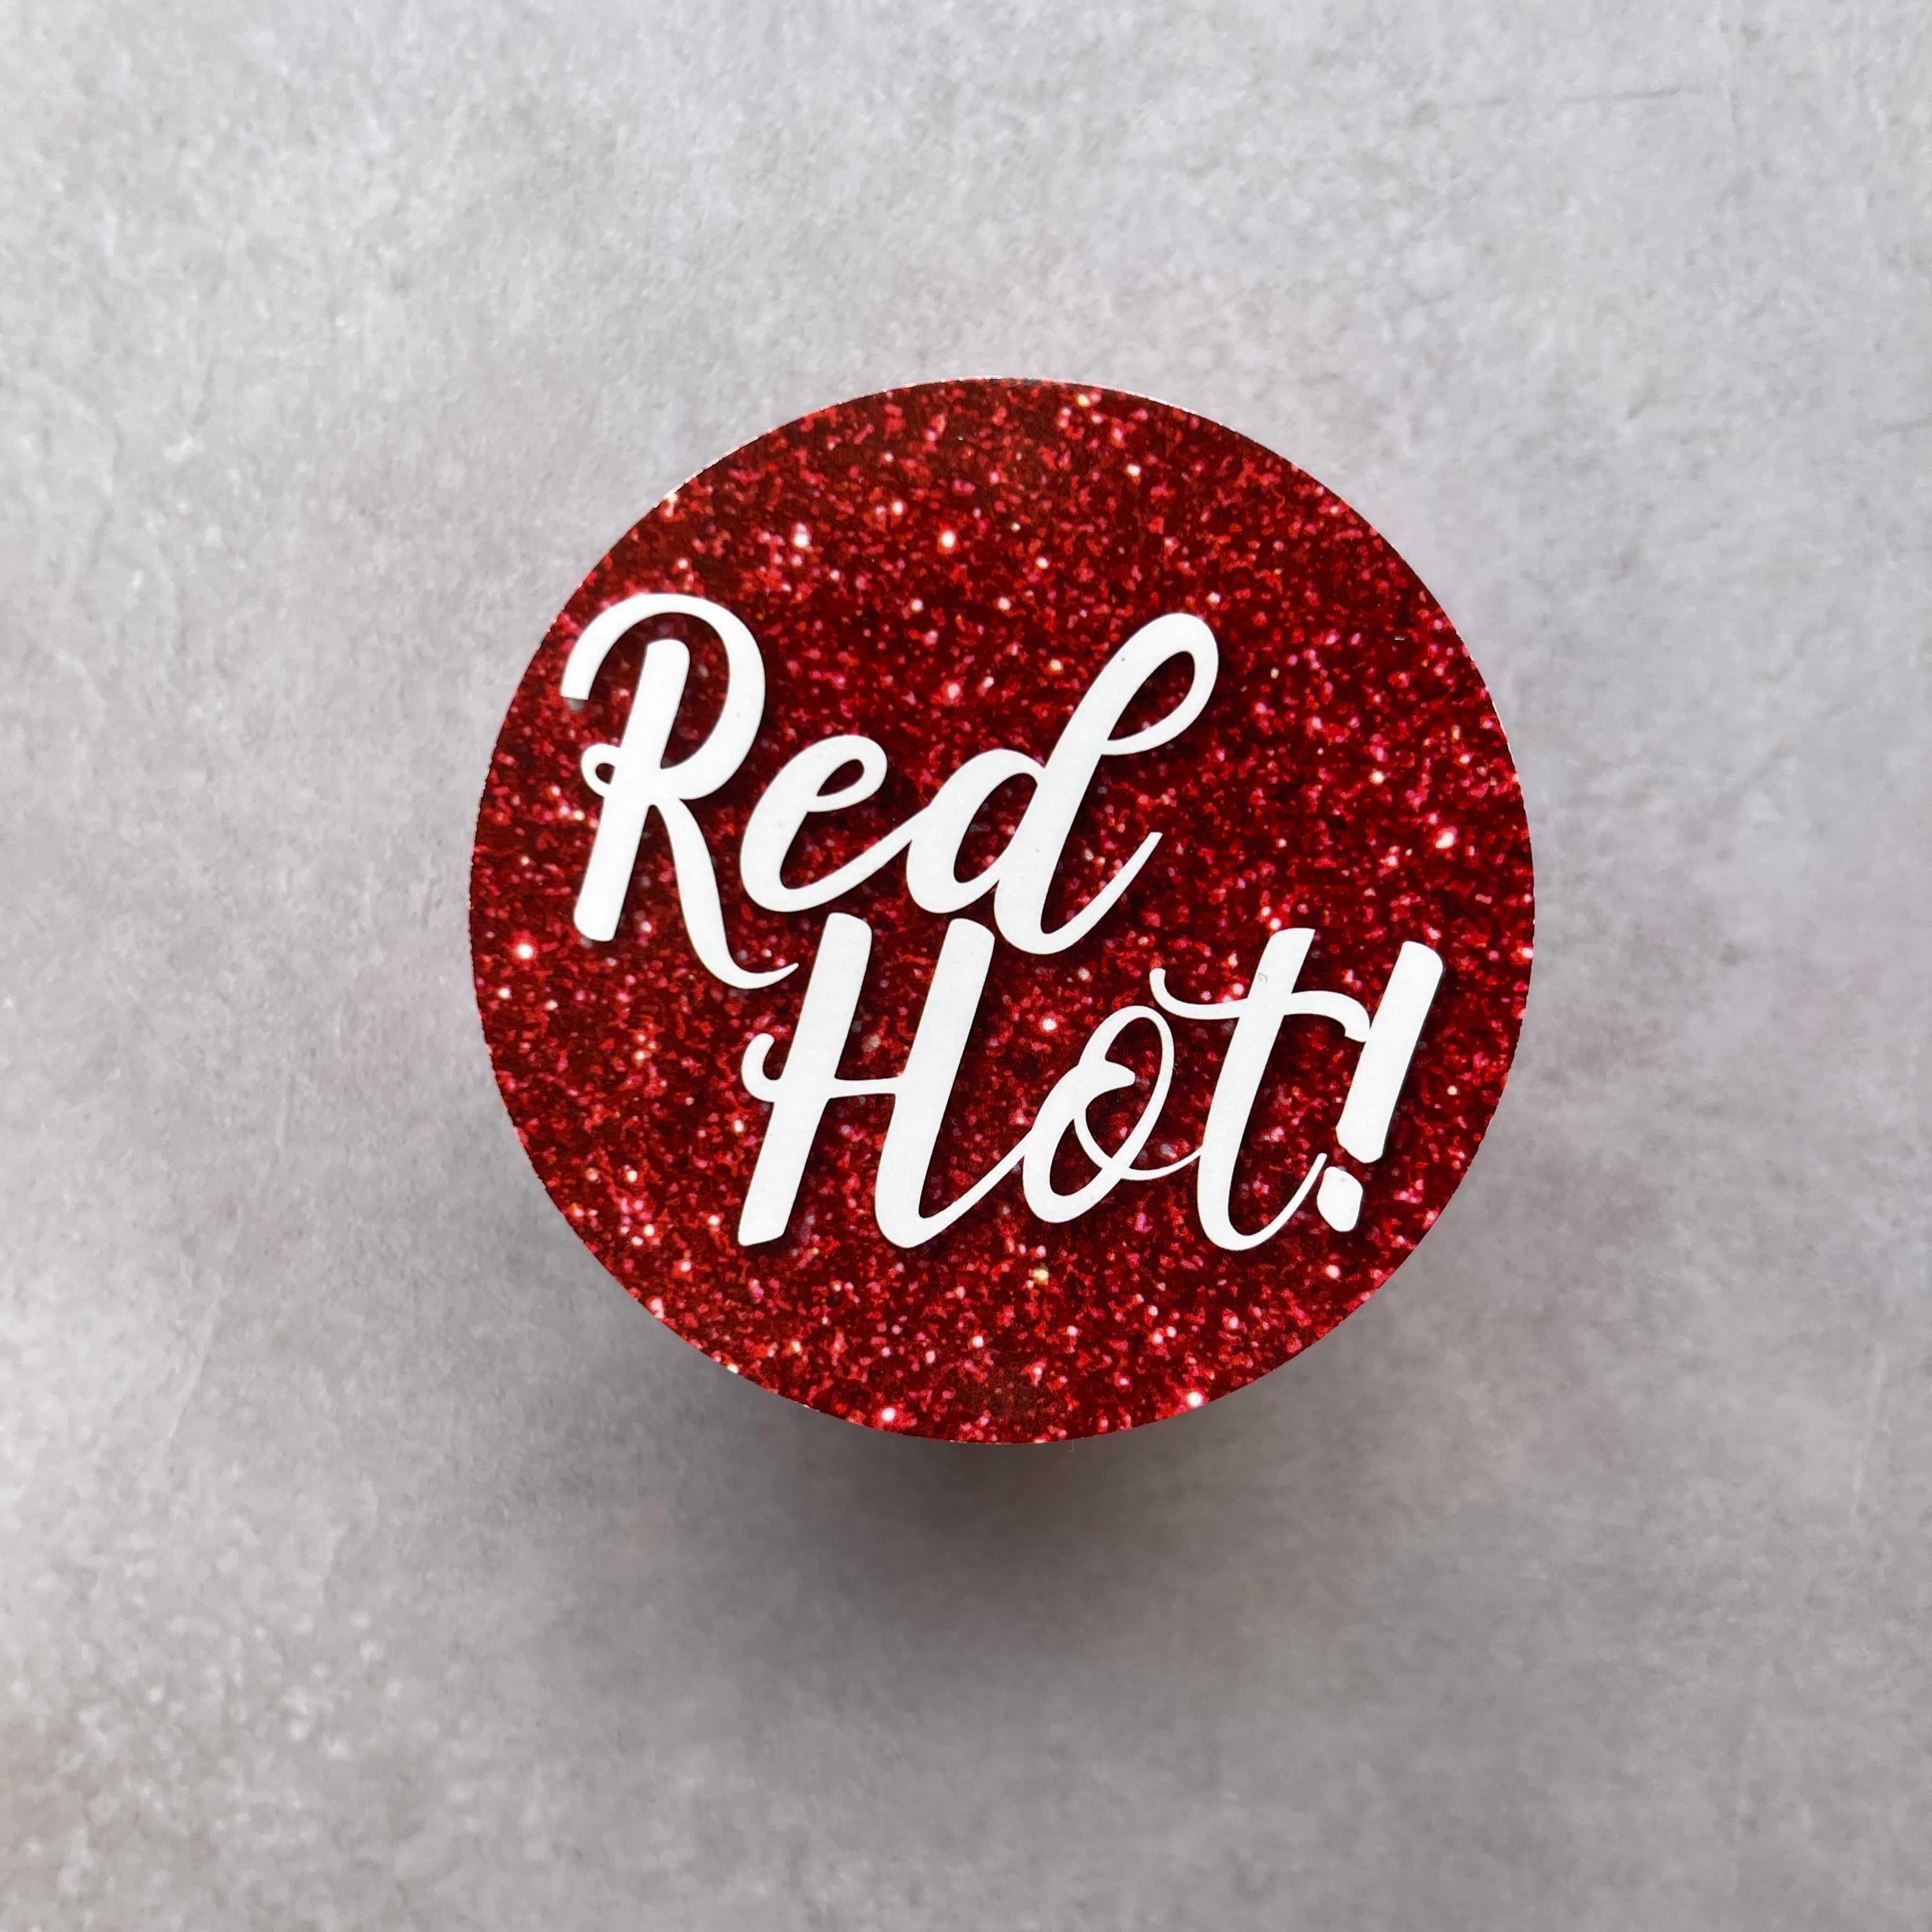 Love Stickers - Red Foam Hearts